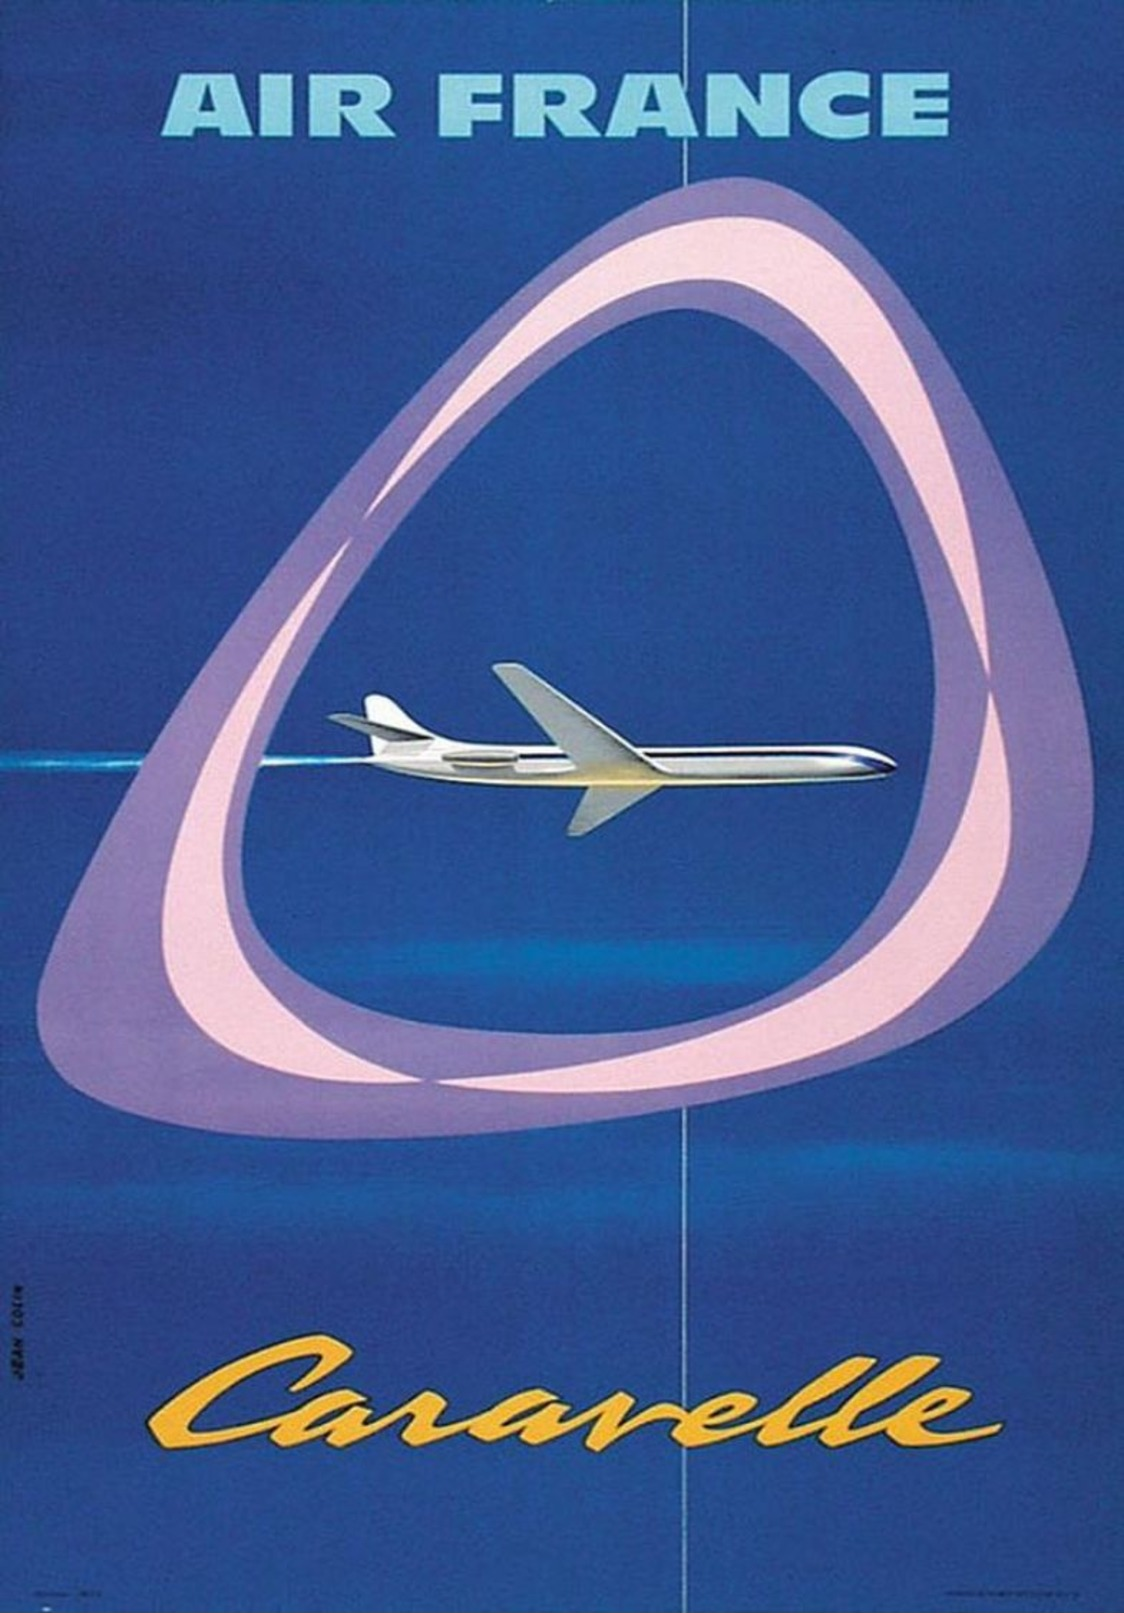 Air France Caravelle 1959 - Postcard - Poster Reproduction - Publicité